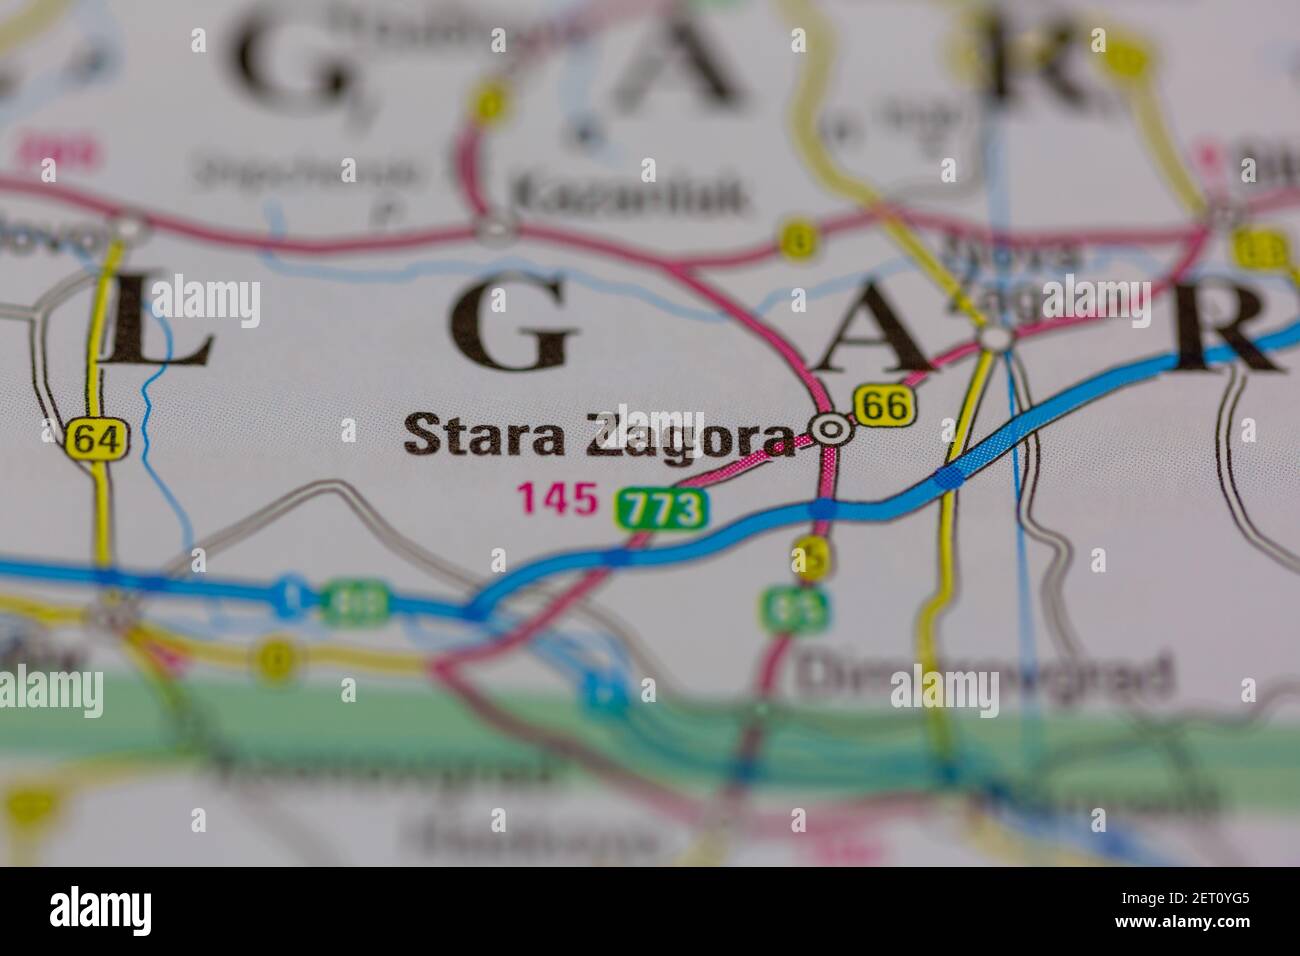 Stara Zagora wird auf einer Straßenkarte oder Geografie-Karte angezeigt Stockfoto